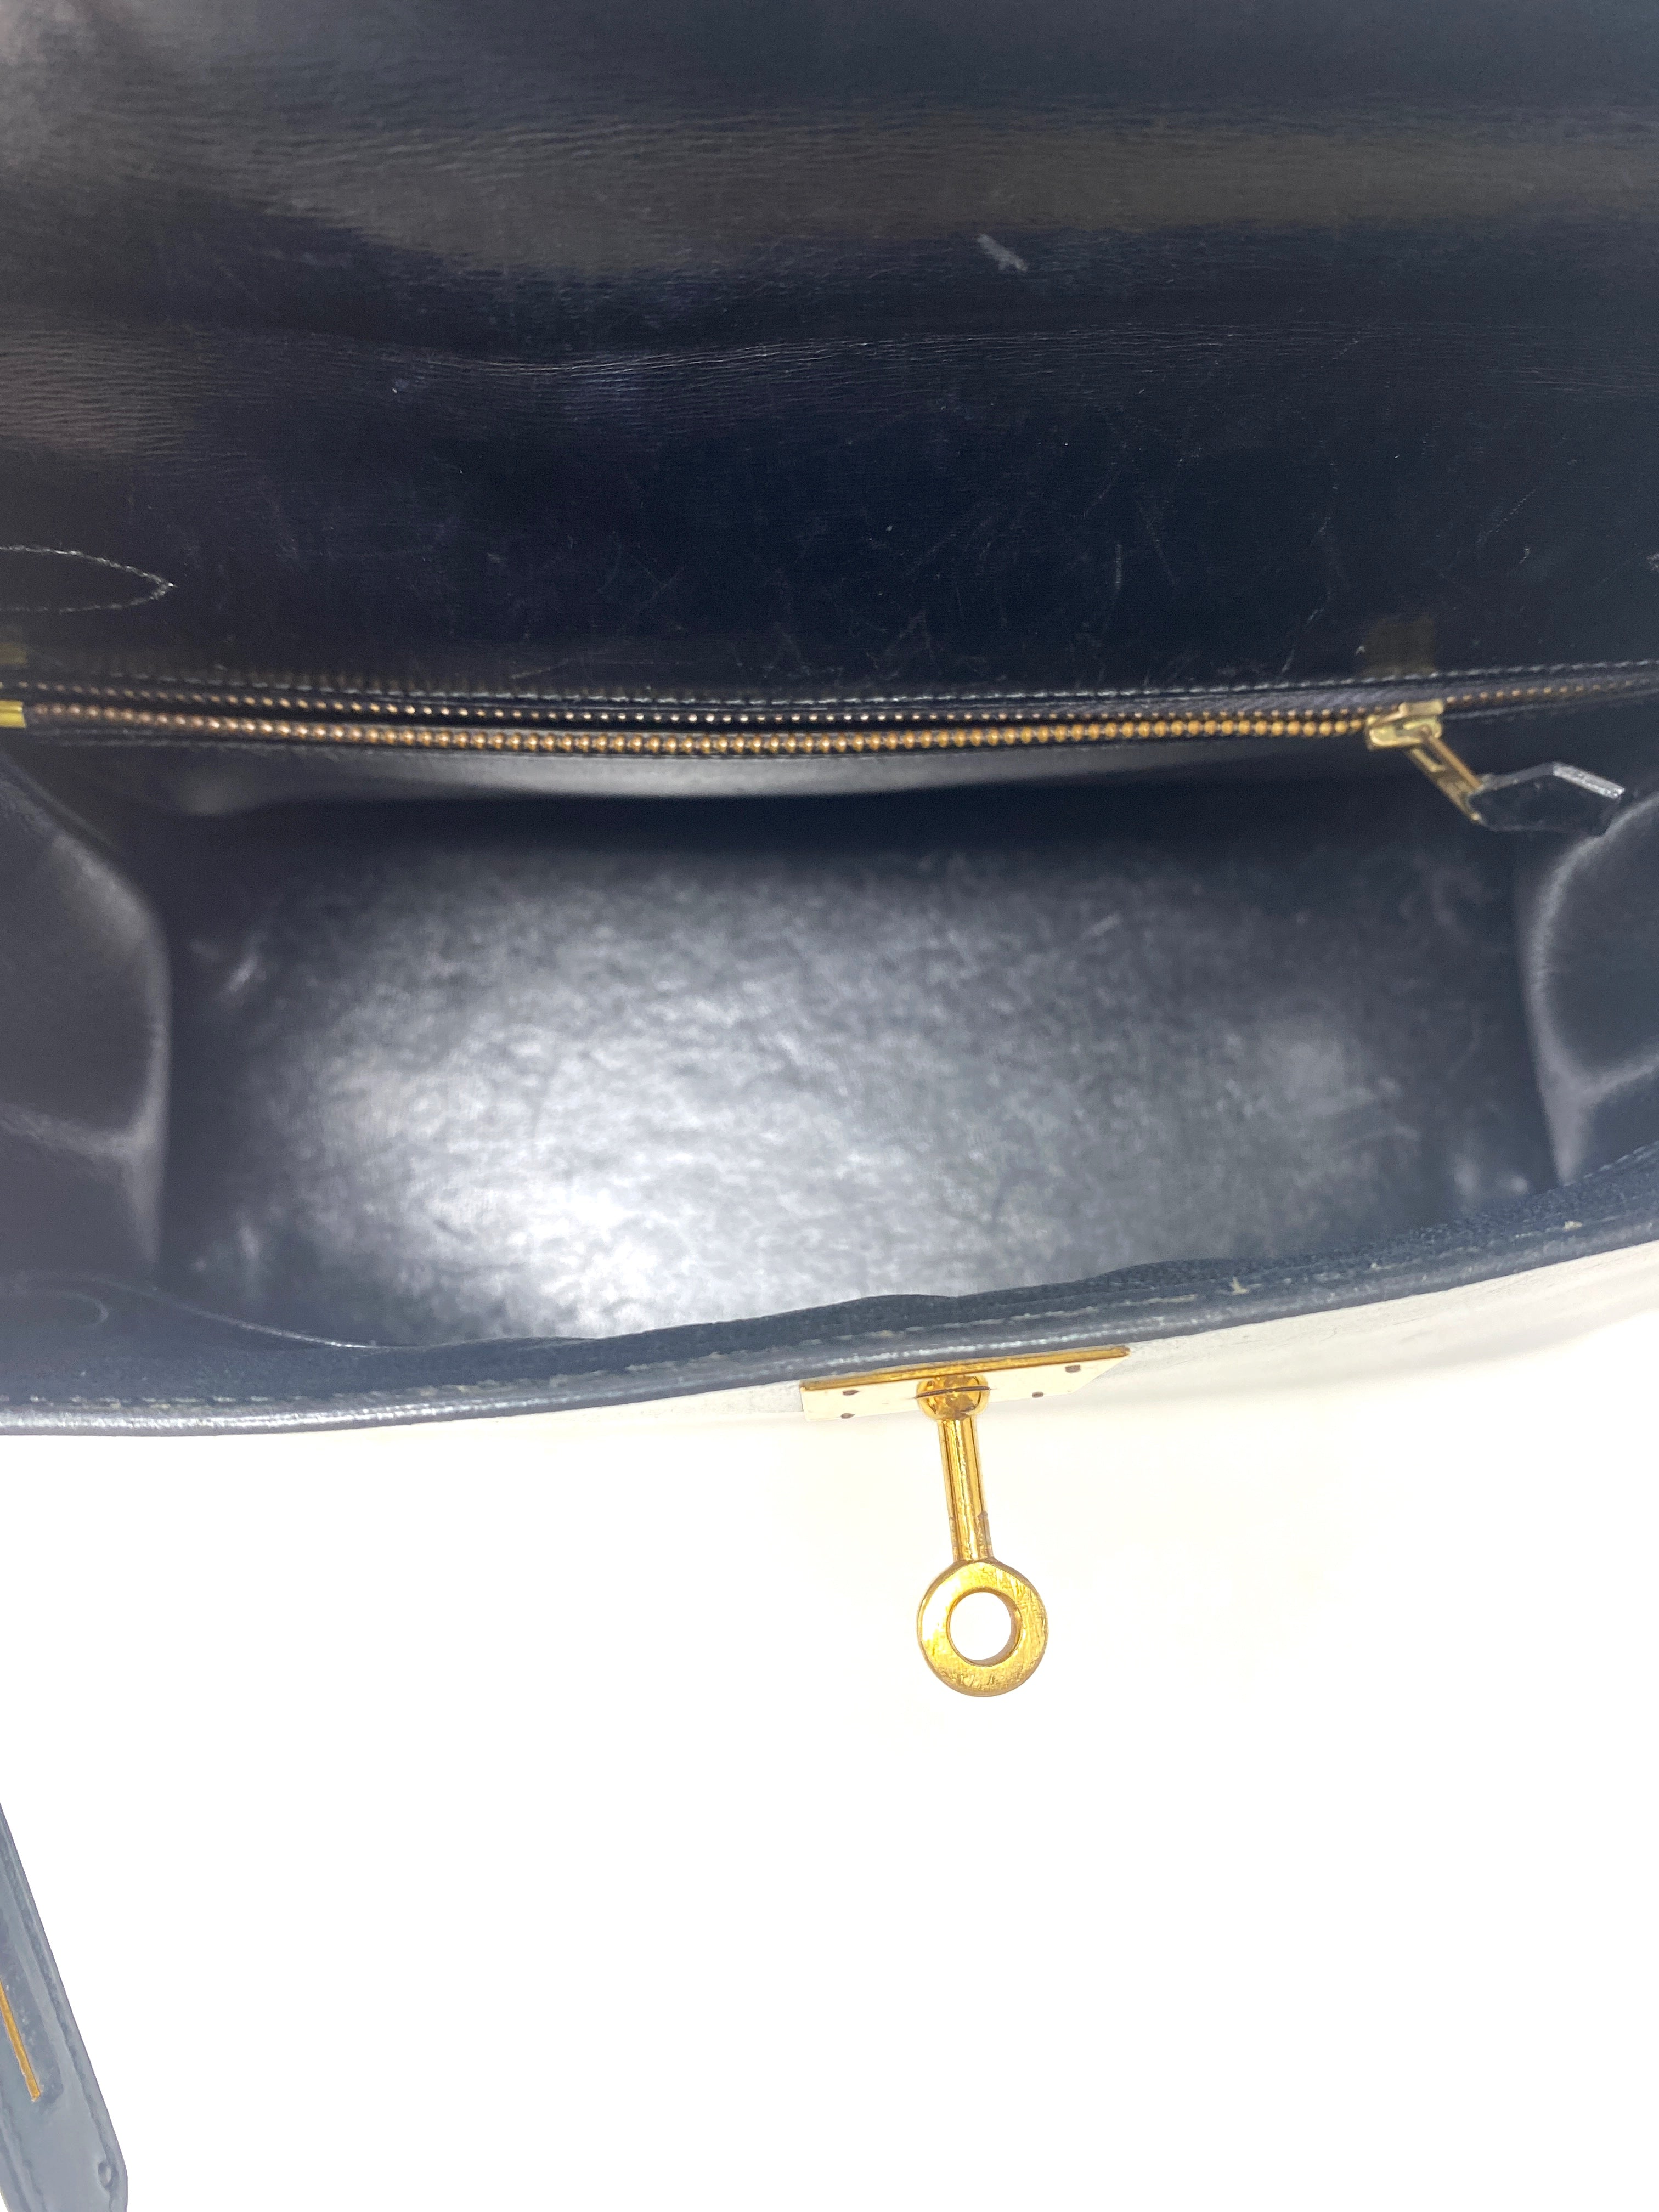 HERMES 2019 Kelly 28 Sellier Black Veau Box GHW - Timeless Luxuries